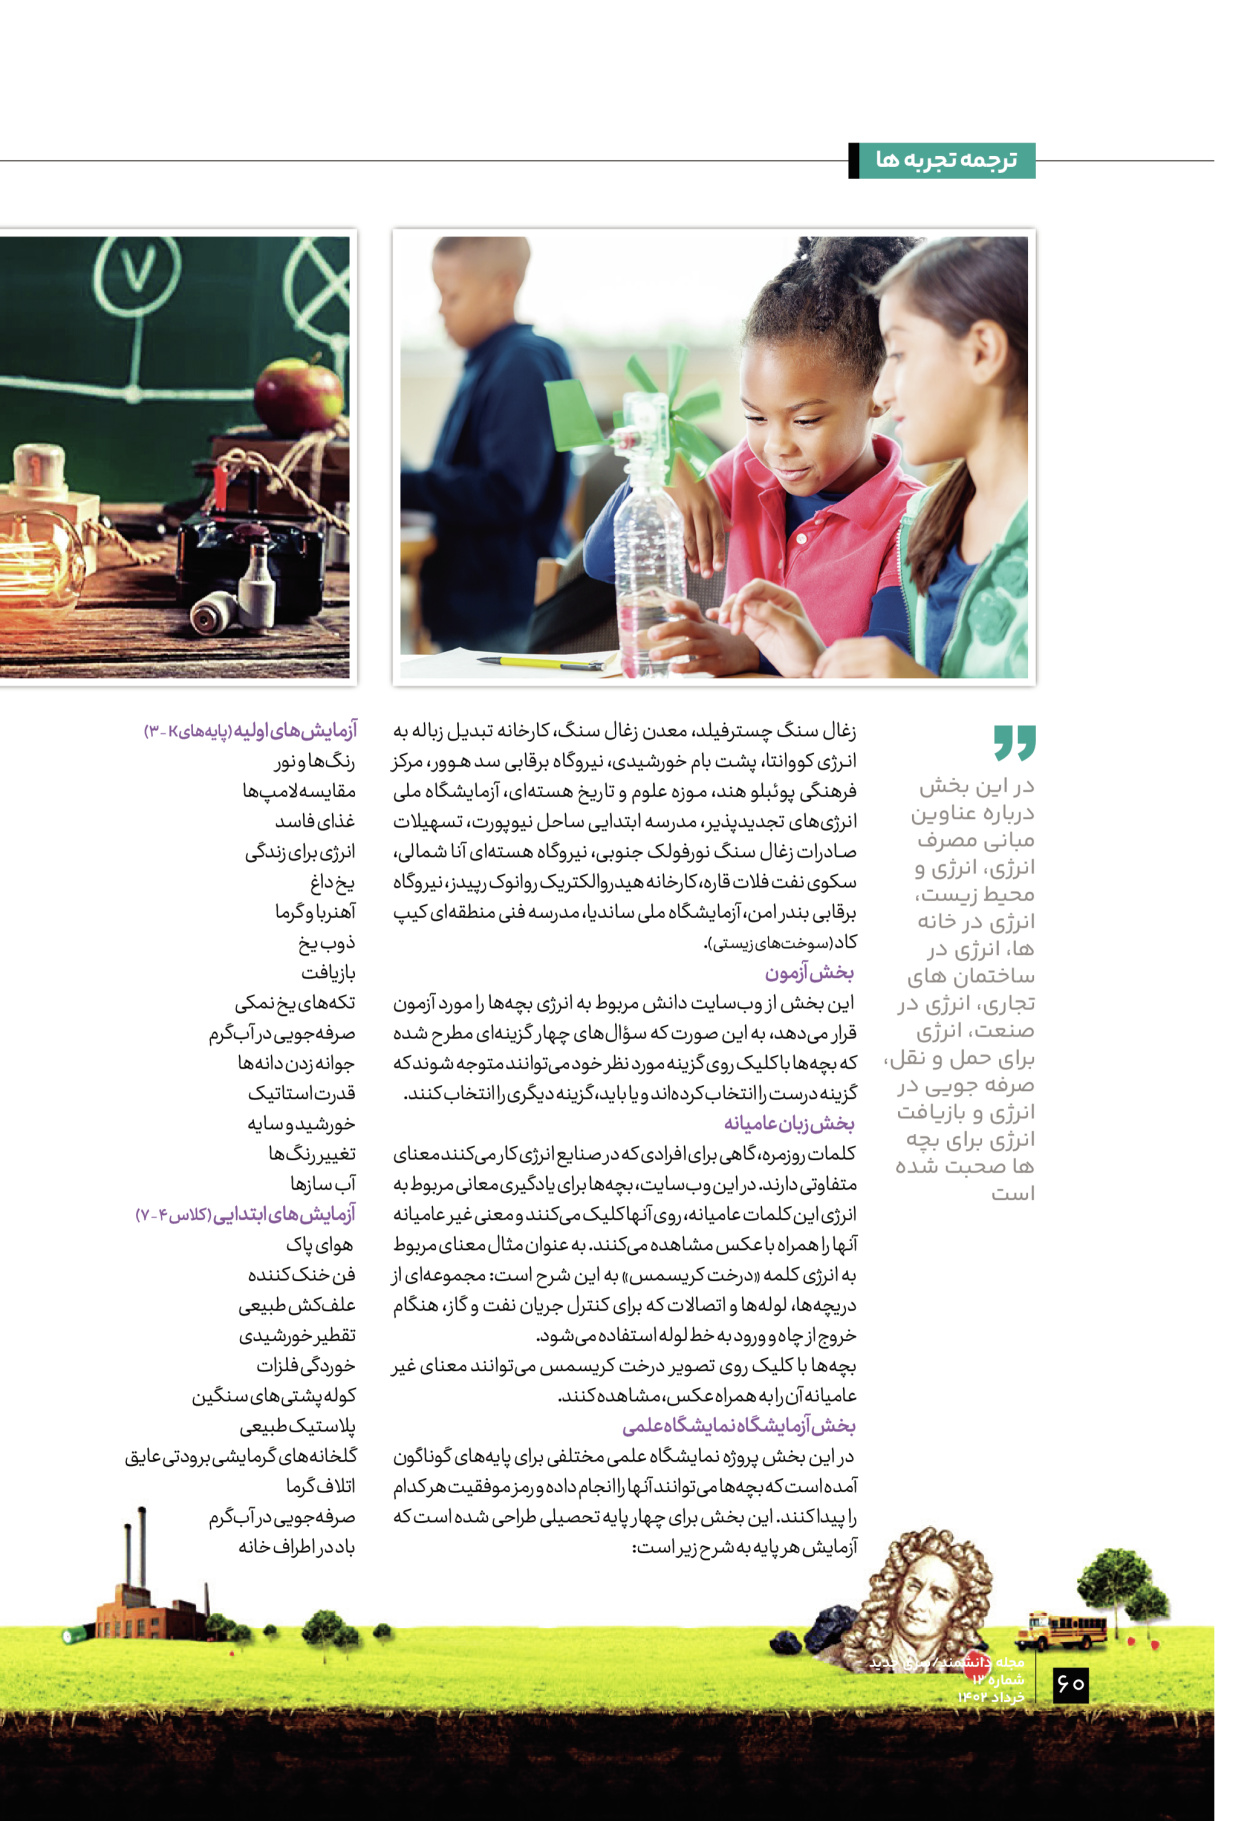 ماه نامه دانشمند - شماره دوازده - ۳۰ خرداد ۱۴۰۲ - صفحه ۶۰